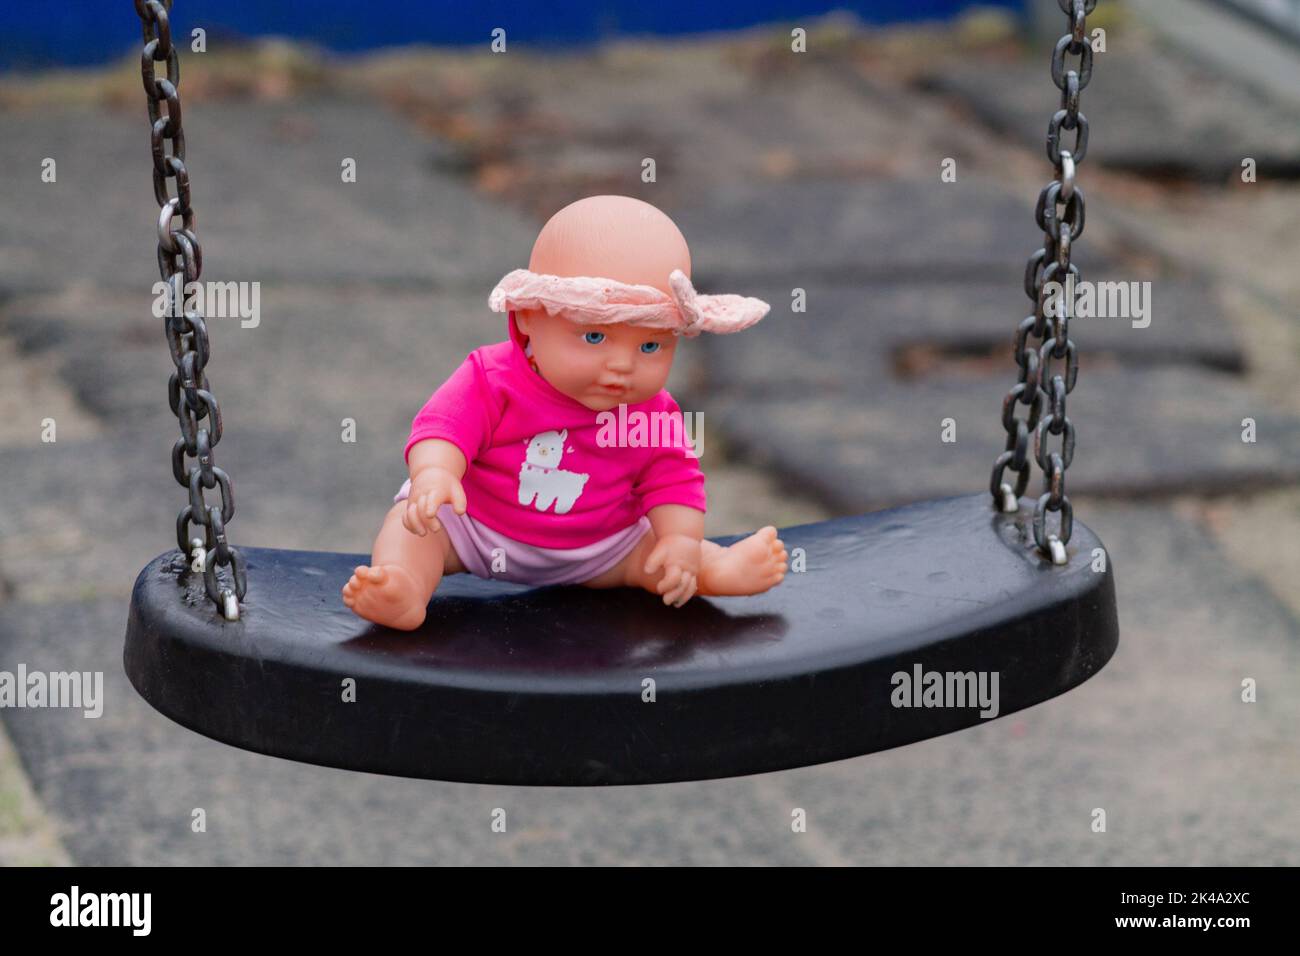 Eine Nahaufnahme einer rosa Puppe auf der Schaukel im Garten Stockfoto